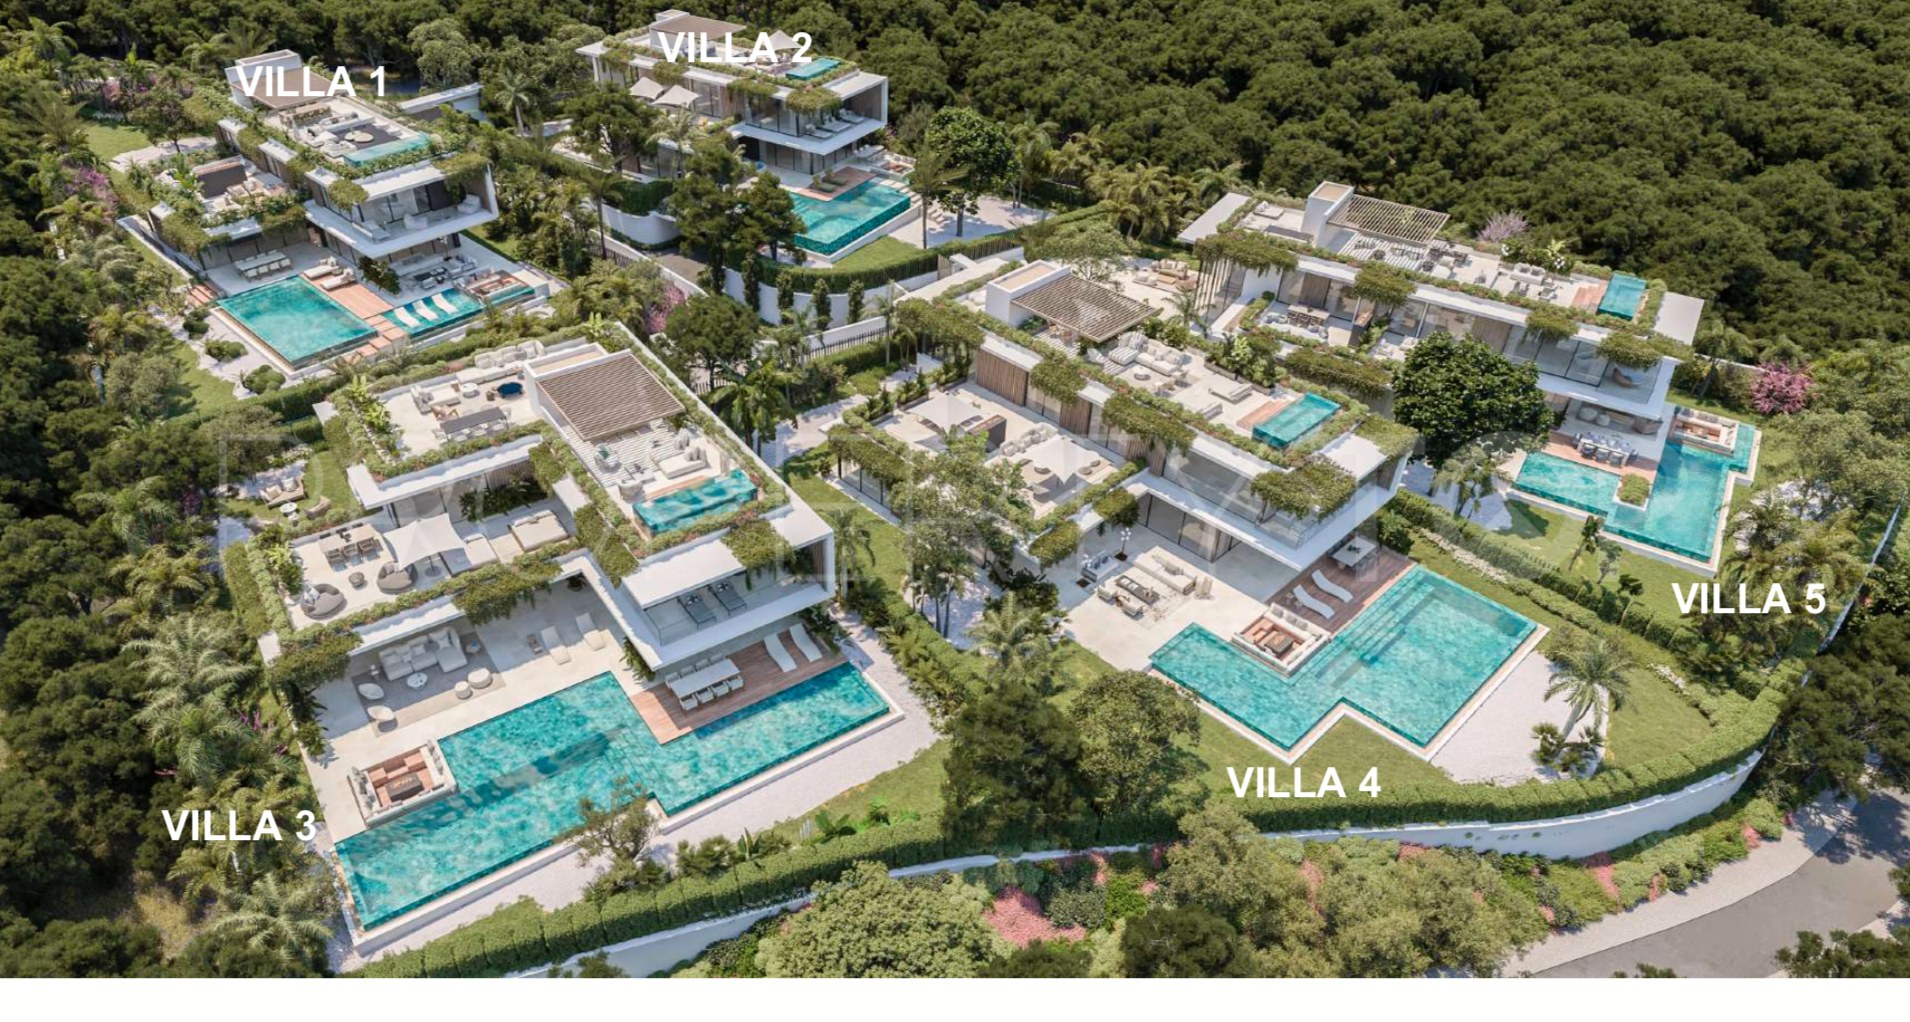 For sale Cascada de Camojan villa with 5 bedrooms